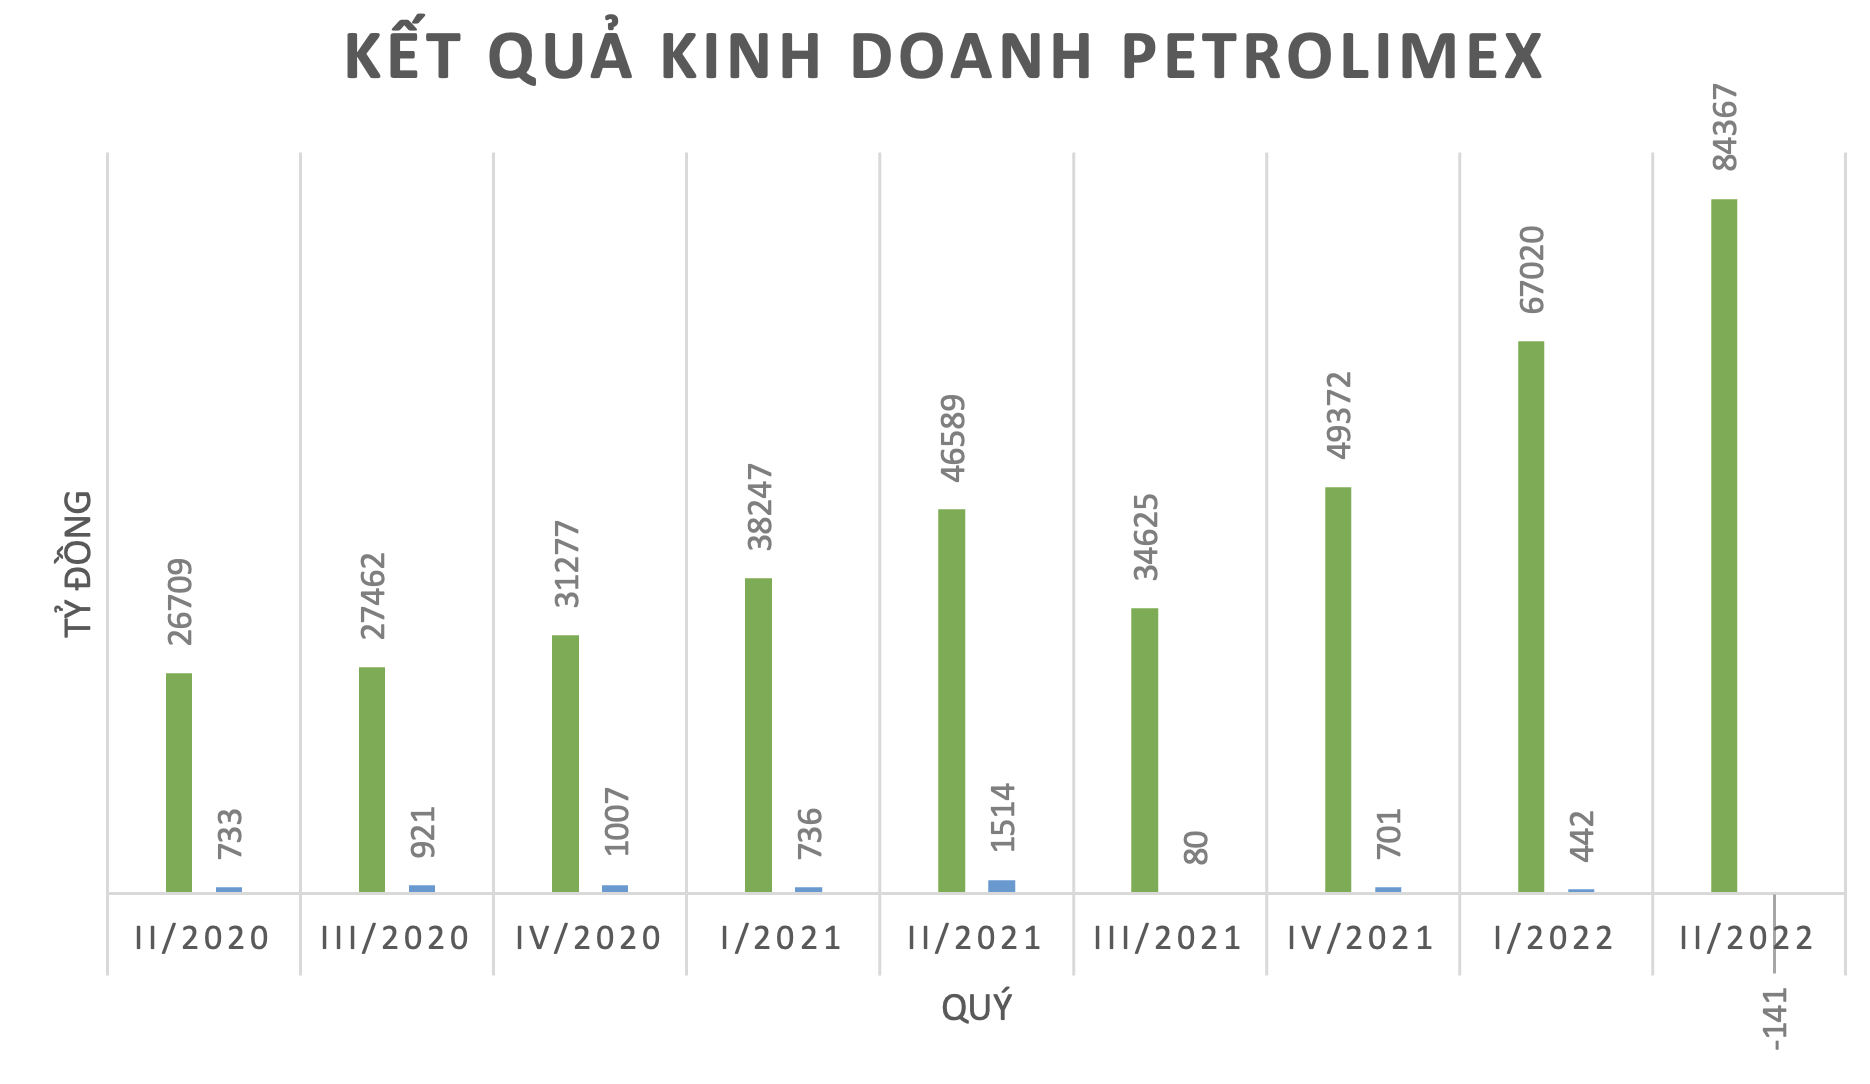 Giá xăng dầu tăng cao kỷ lục, vì sao Petrolimex vẫn lỗ? - 1